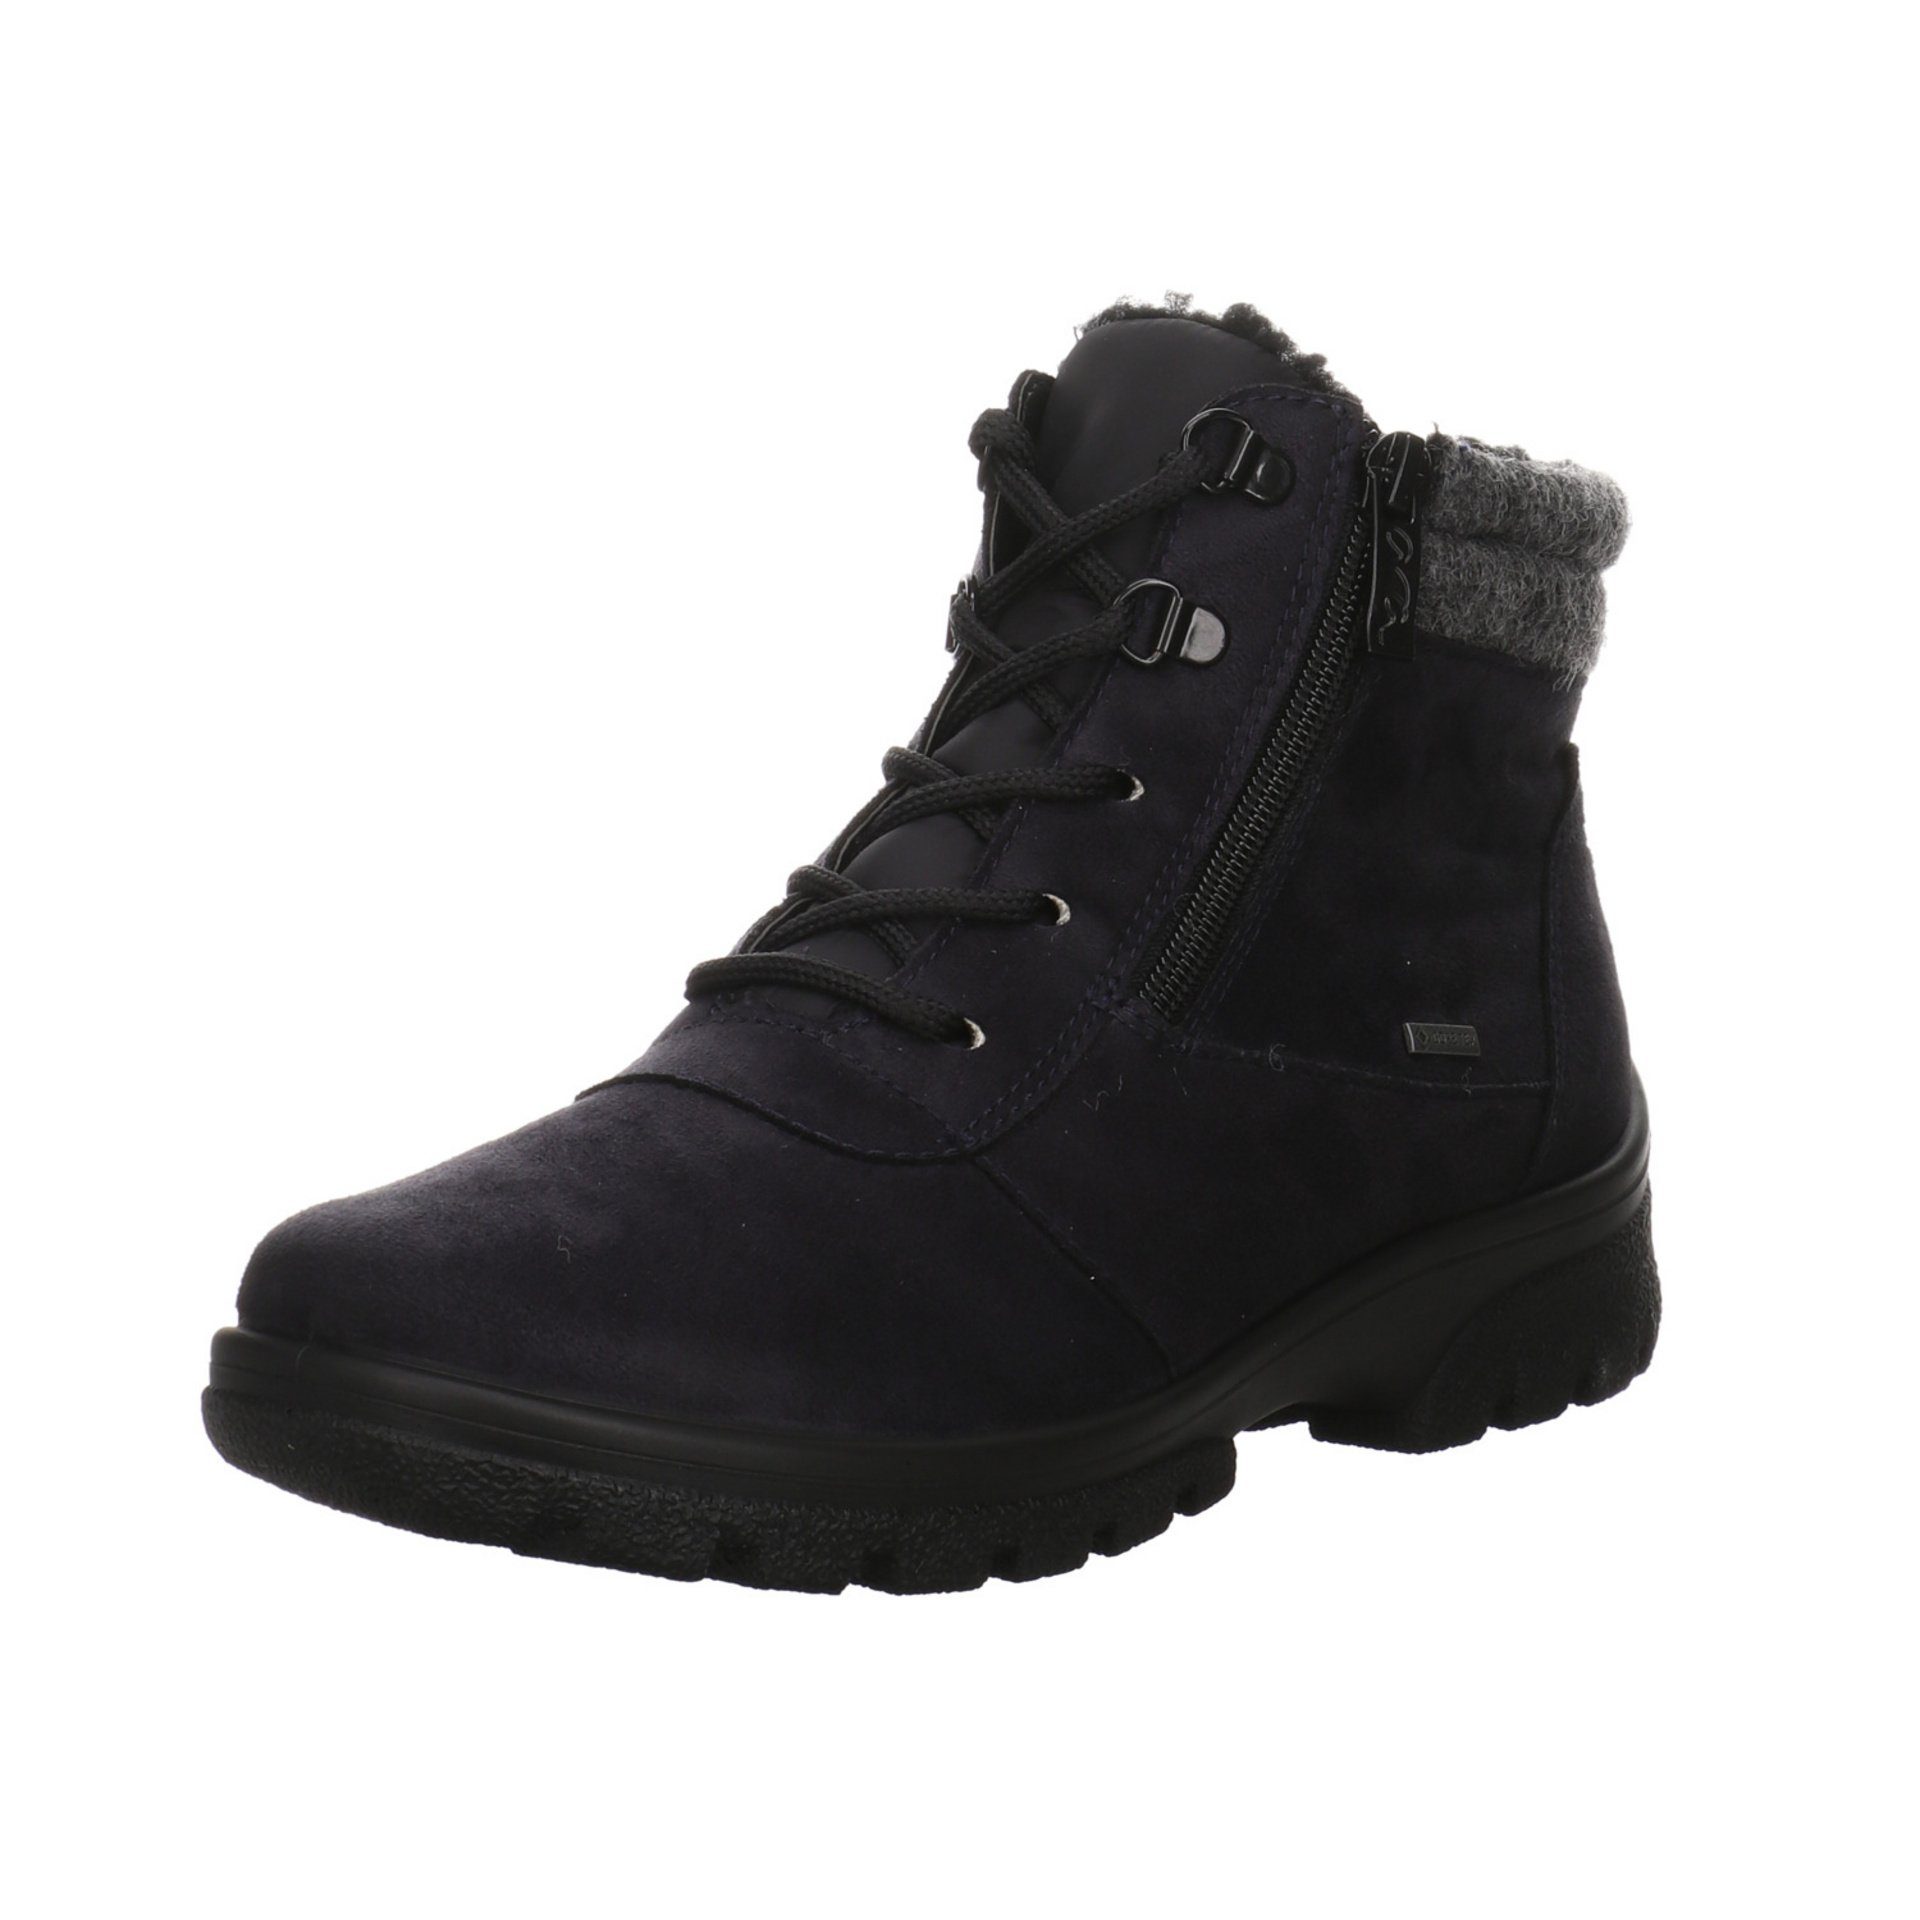 Ara Damen Snowboots blau/grau/schwarz Boots Leder-/Textilkombination Snowboots Schuhe Saas-Fee